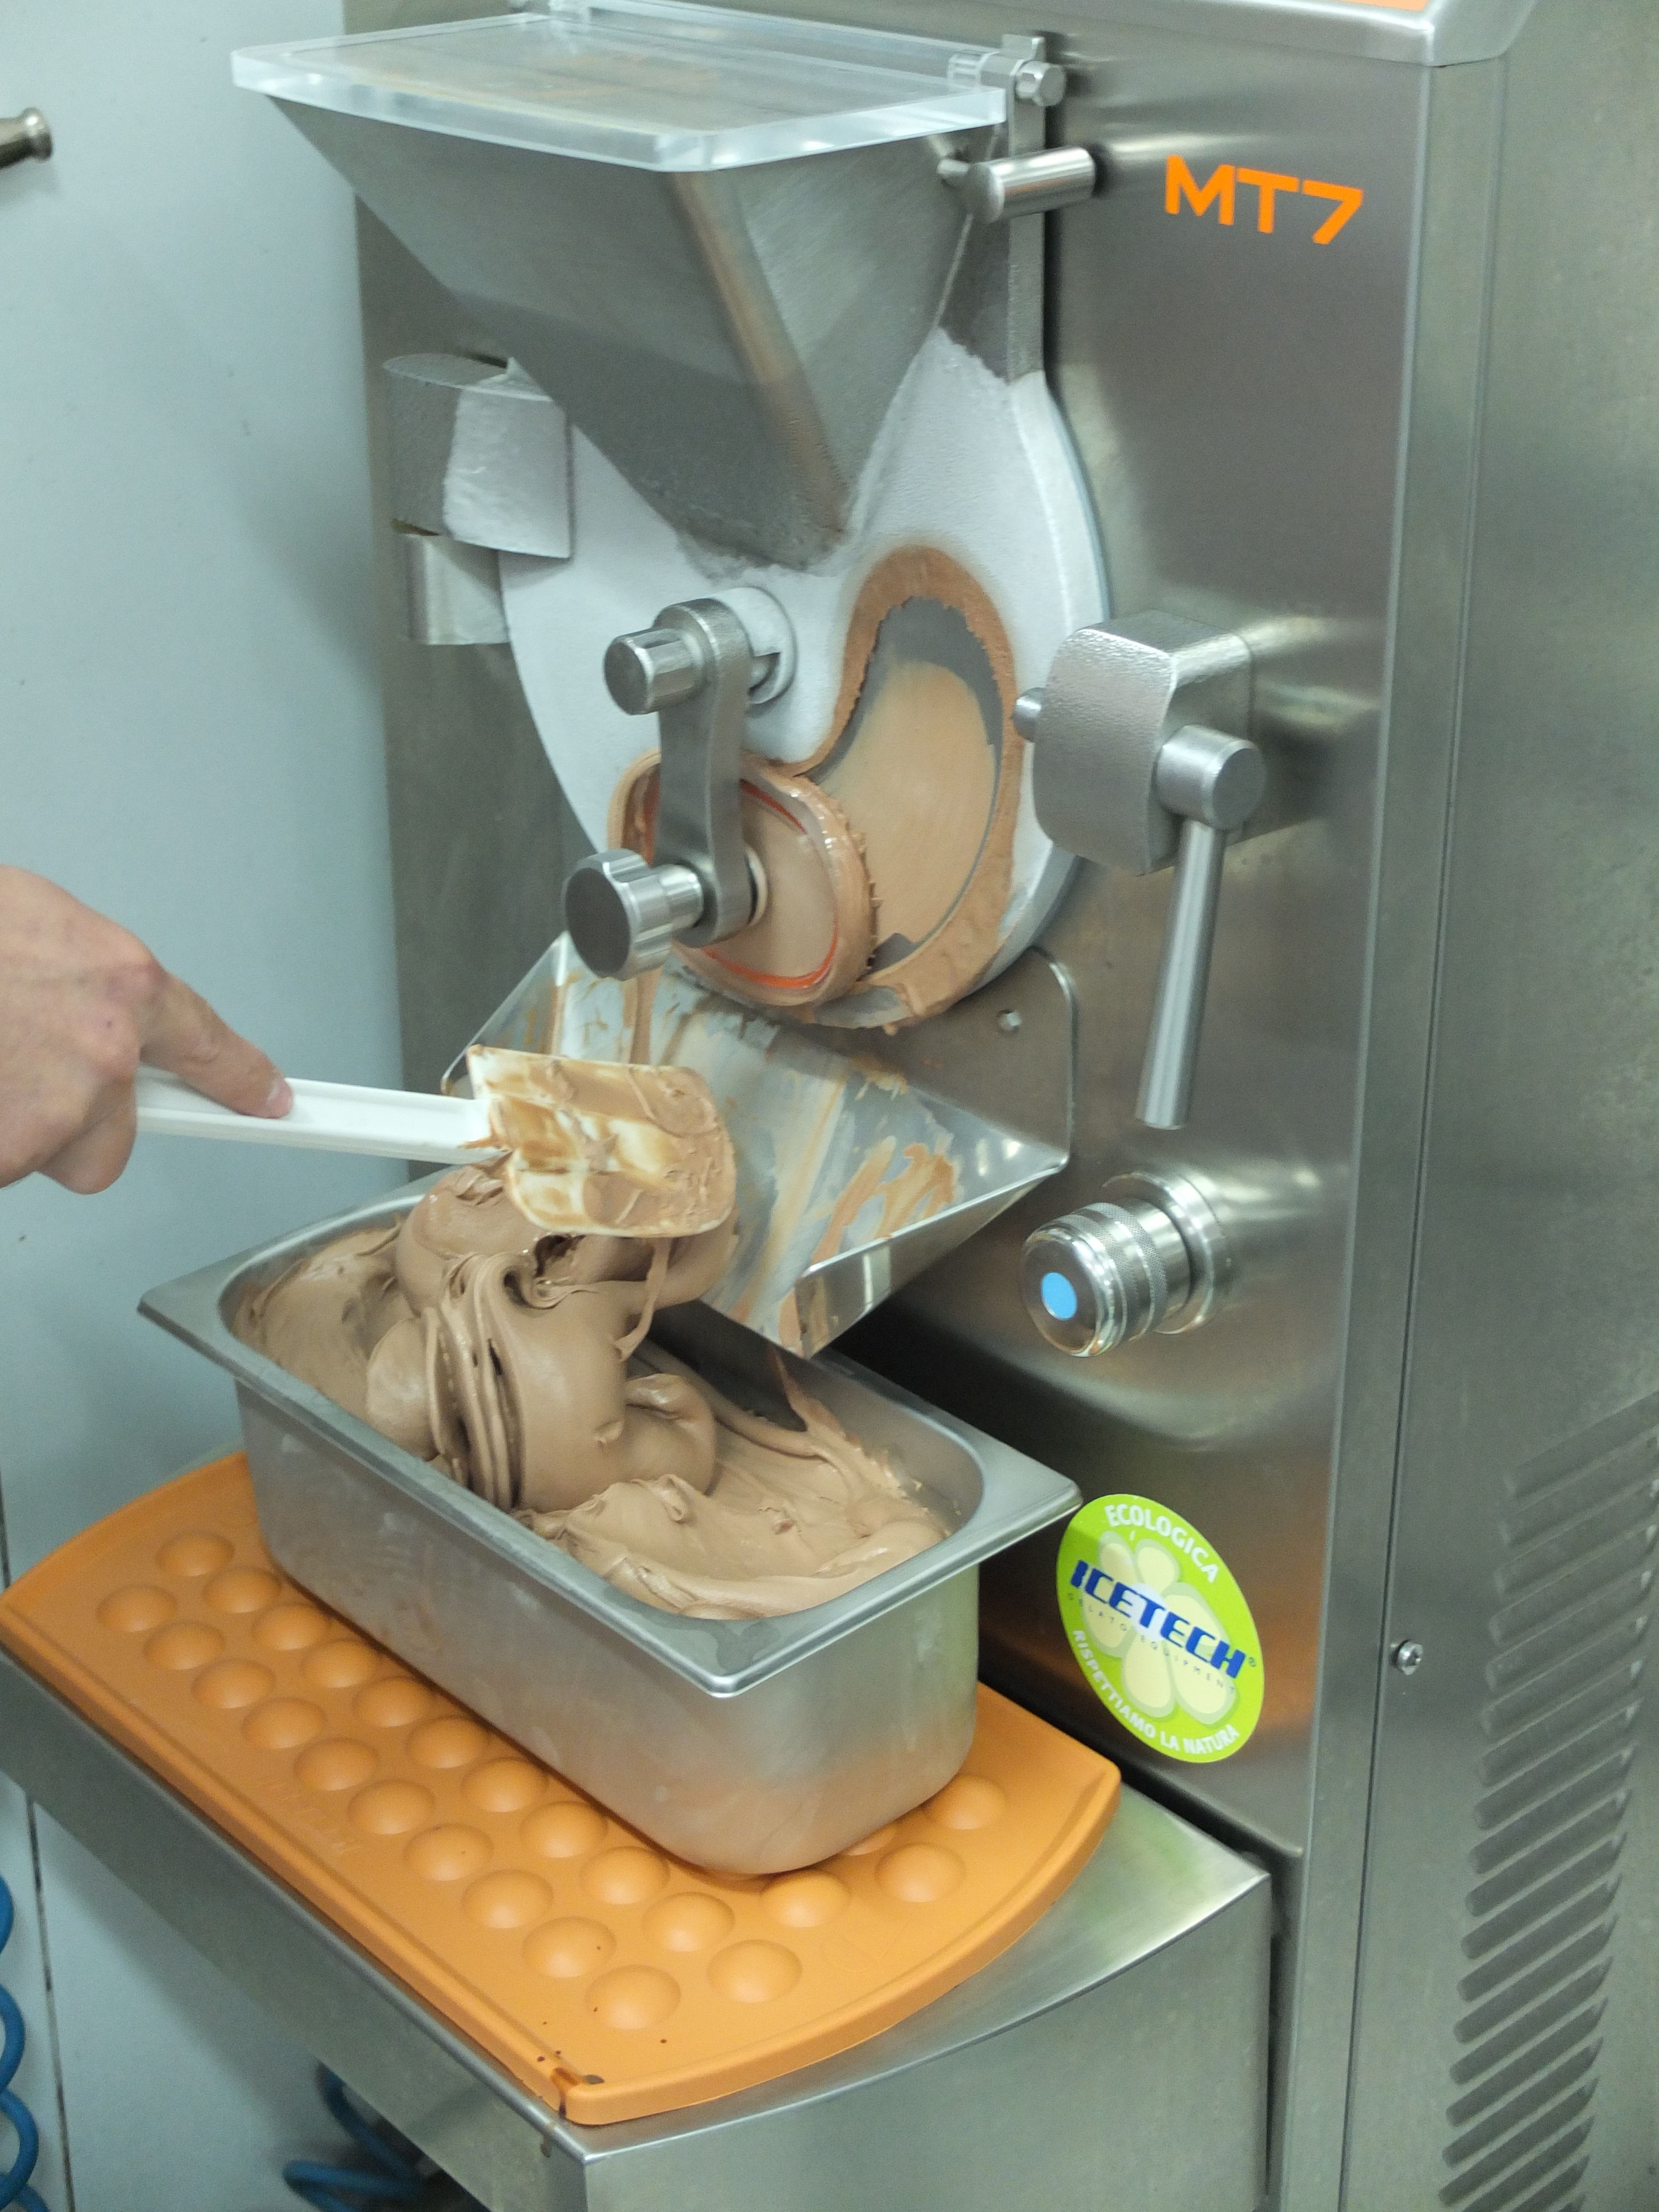 Foto 14 de Fábrica de helados en Mollet del Vallès | Brina, S.L.